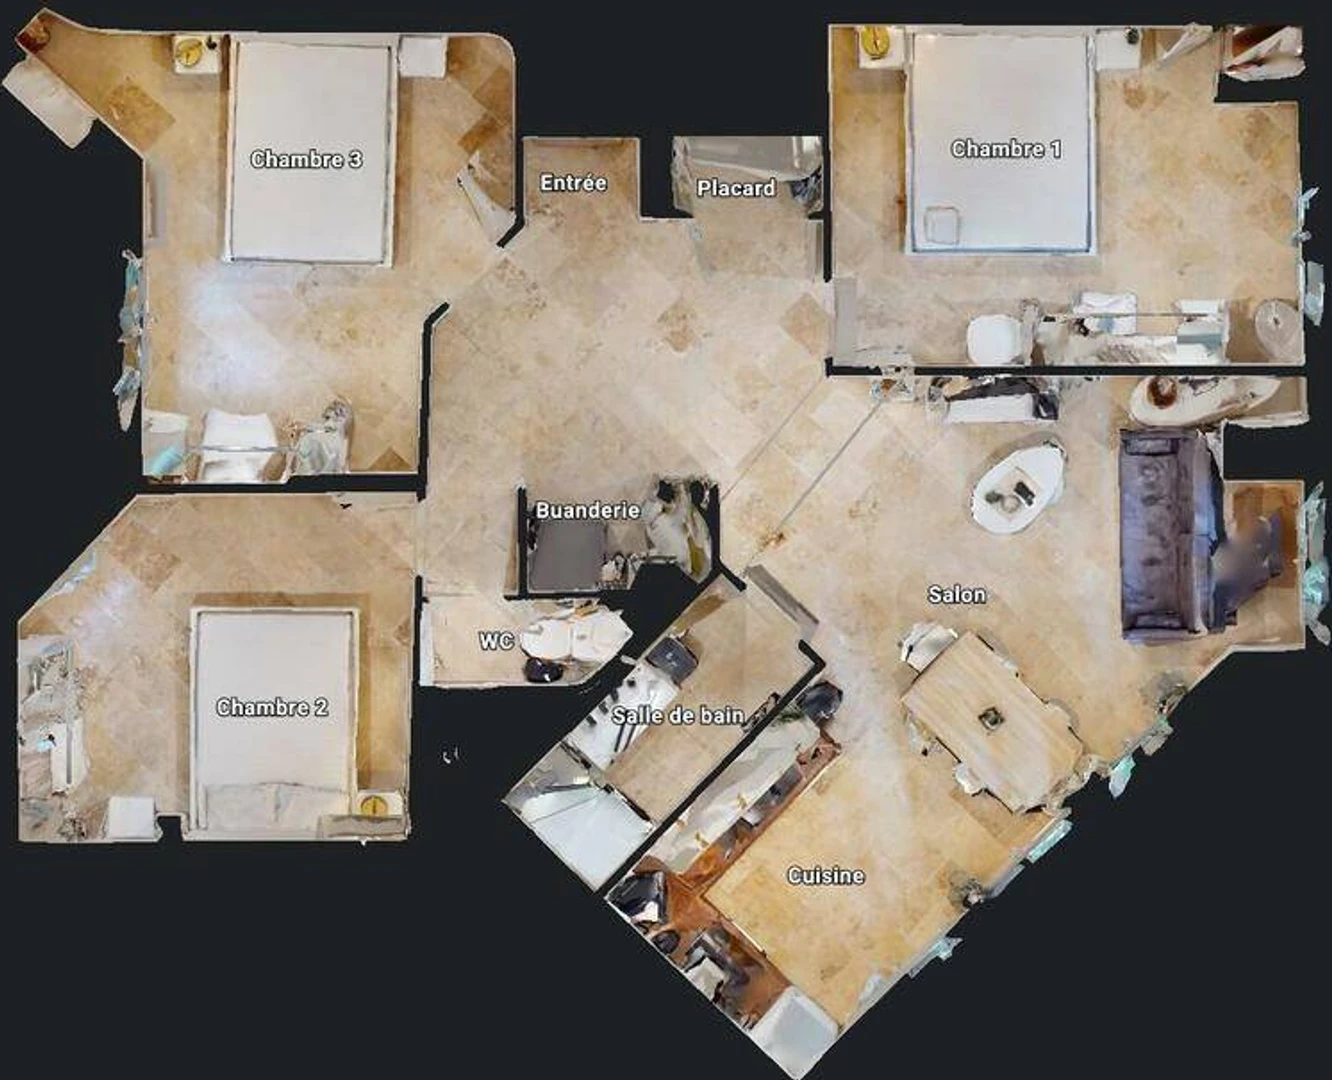 Alquiler de habitación en piso compartido en Avignon